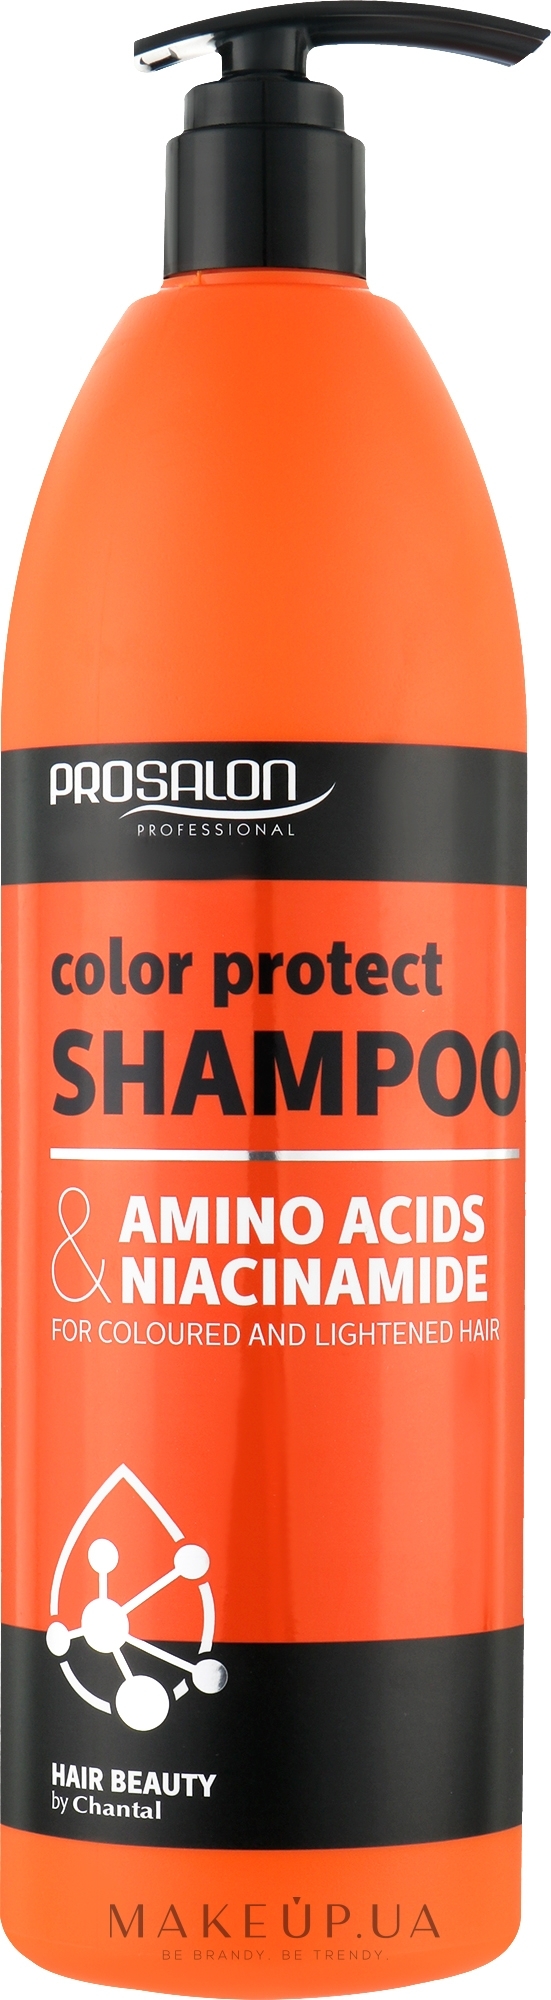 Шампунь для защиты цвета окрашенных и обесцвеченных волос - Prosalon Amino Acids & Niacynamide — фото 1000g